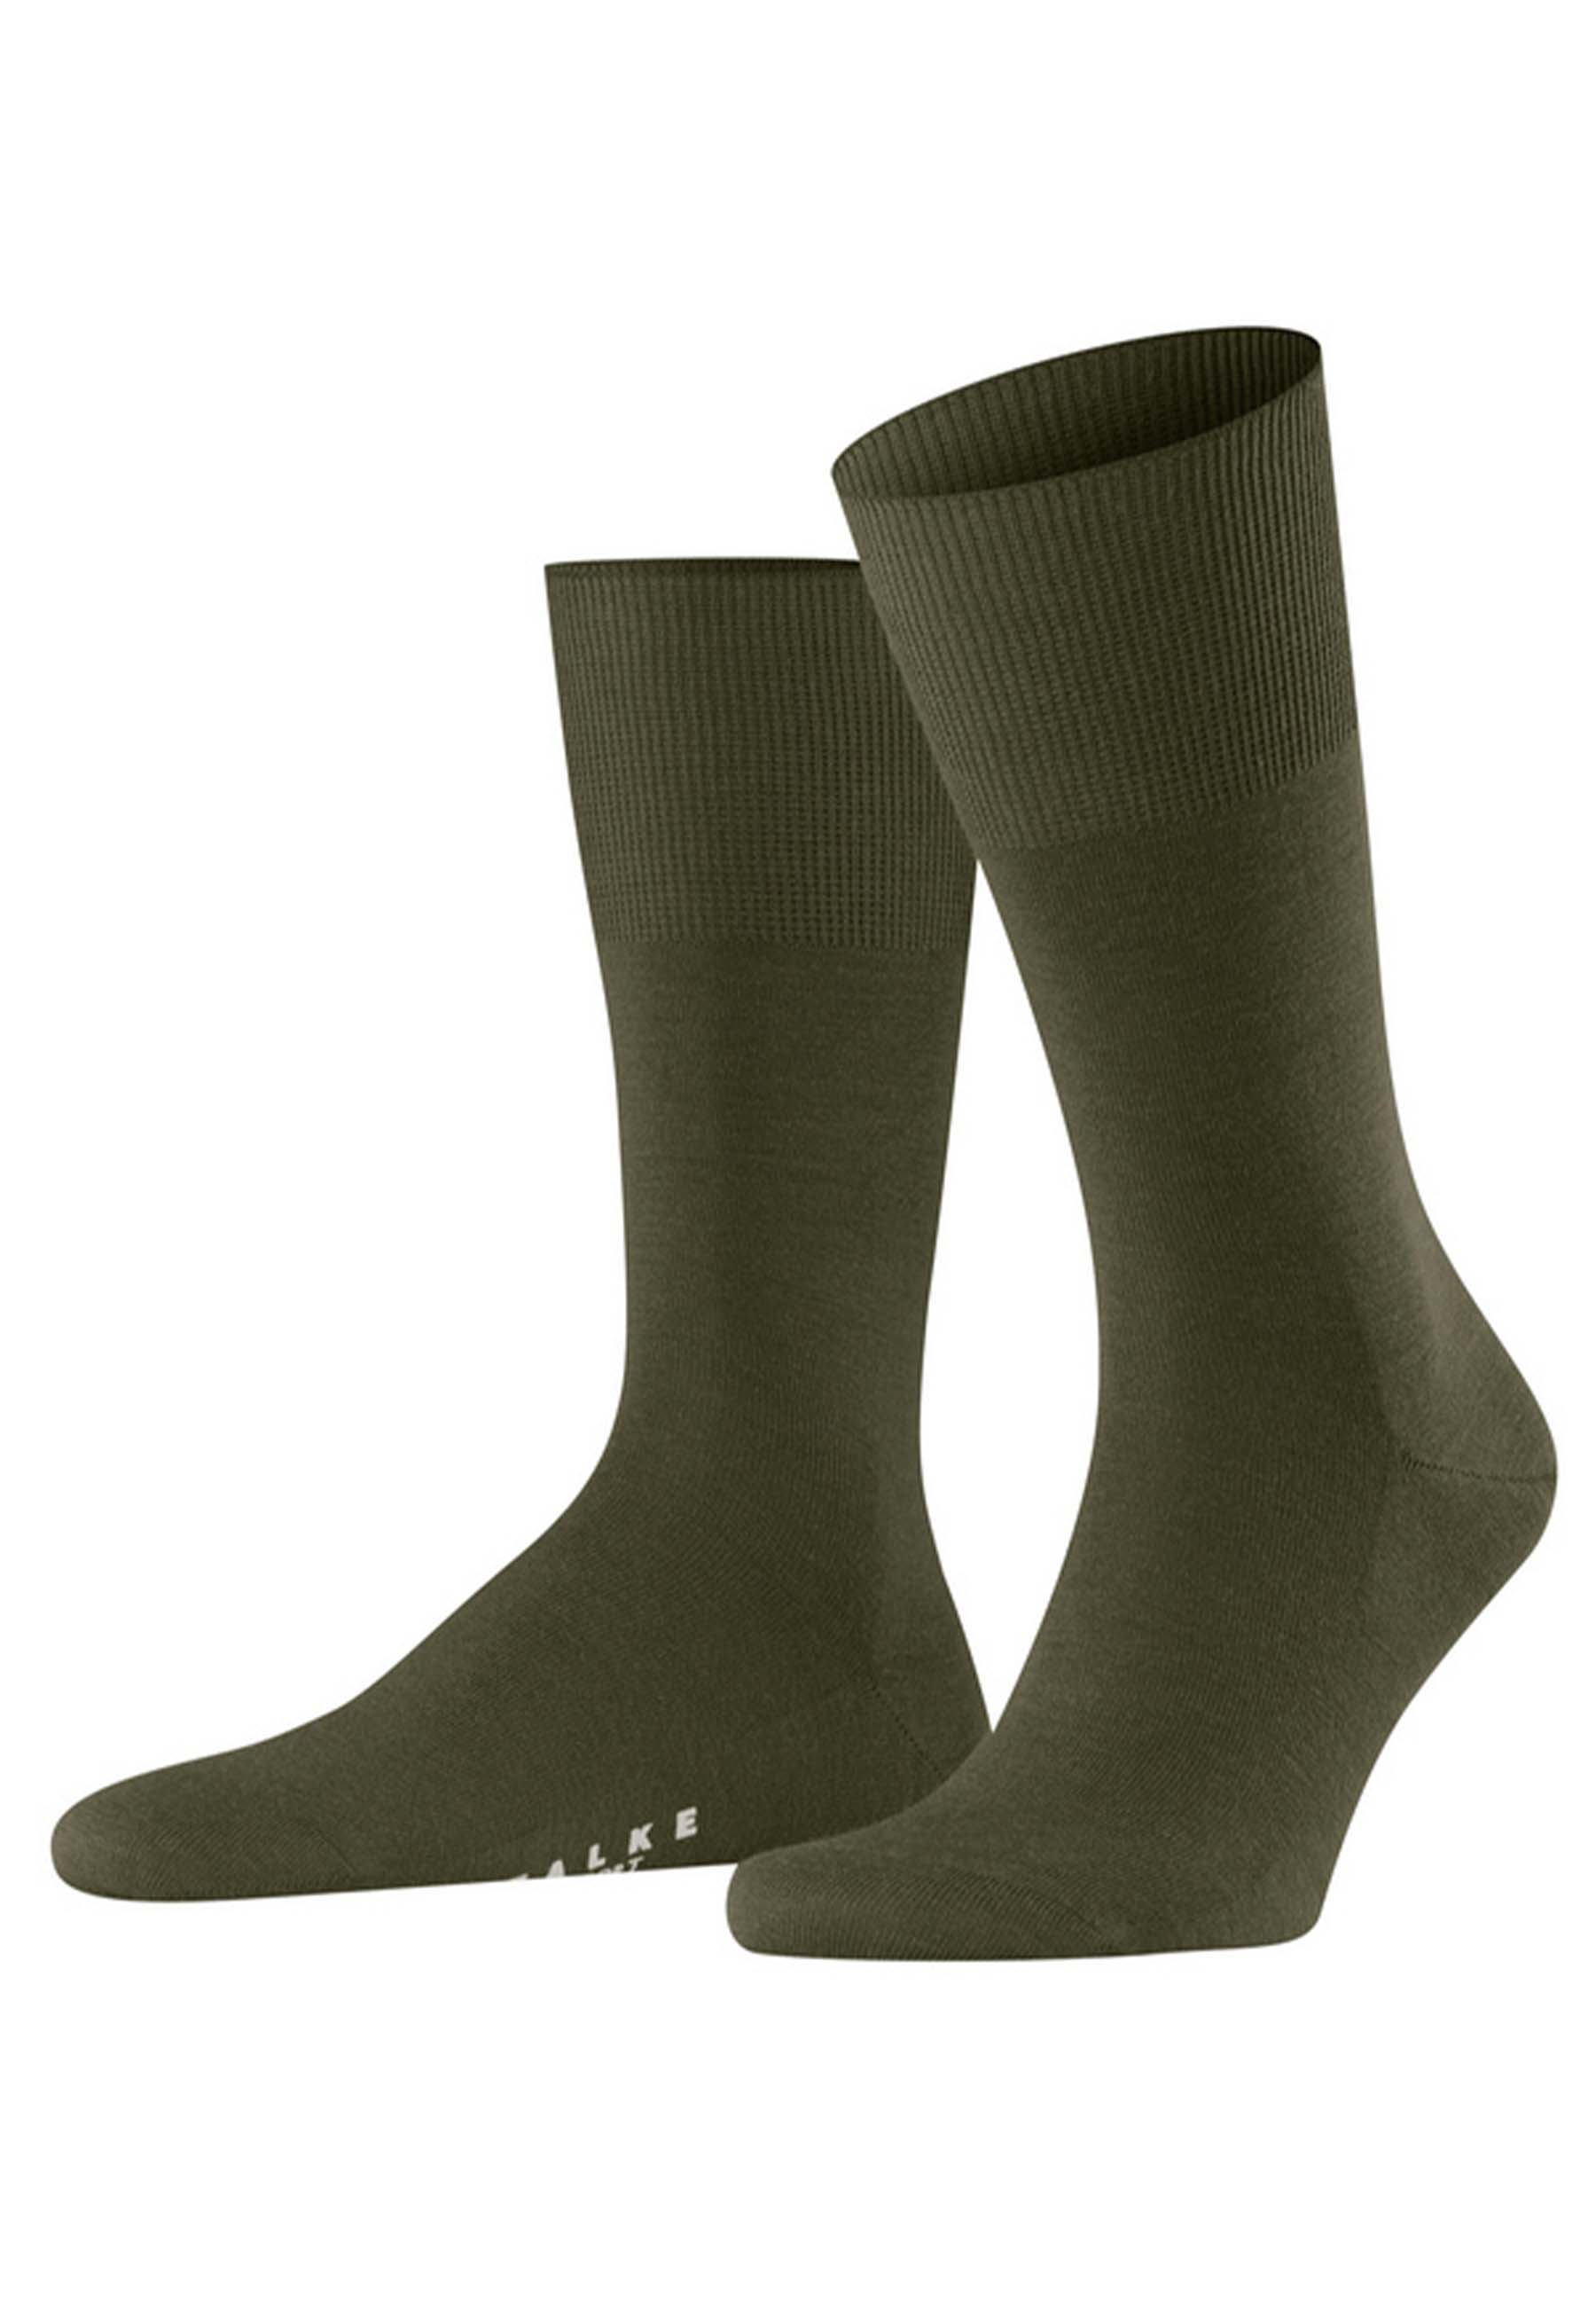 FALKE Sokken Groen maat 43-44 hoge sokken groen